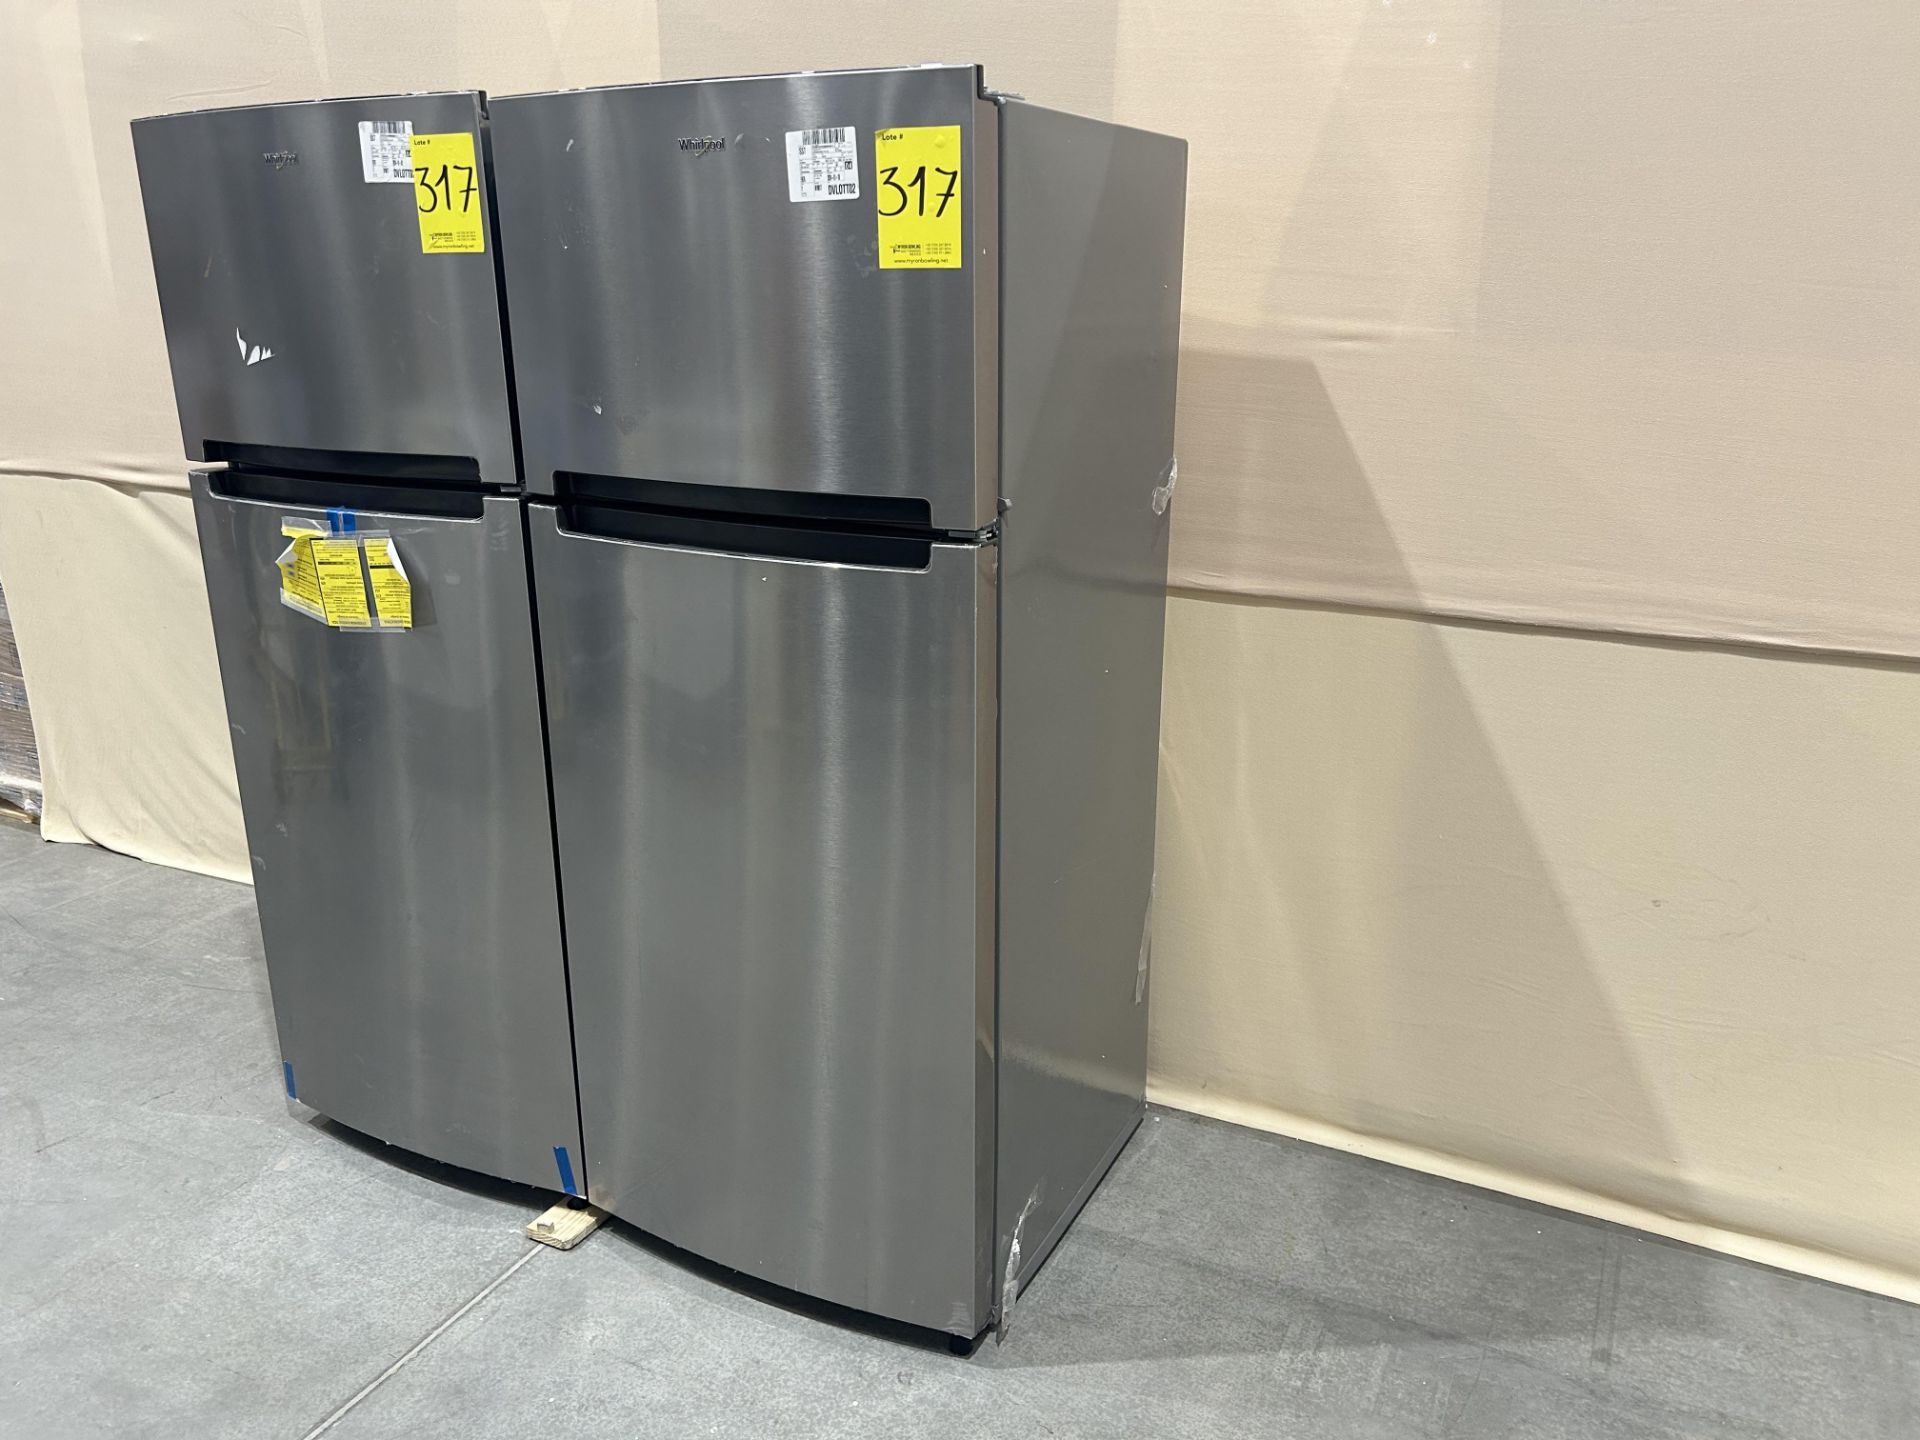 Lote de 2 refrigeradores contiene: 1 refrigerador Marca WHIRLPOOL, Modelo WT1818A, Serie 535500, Co - Image 2 of 6